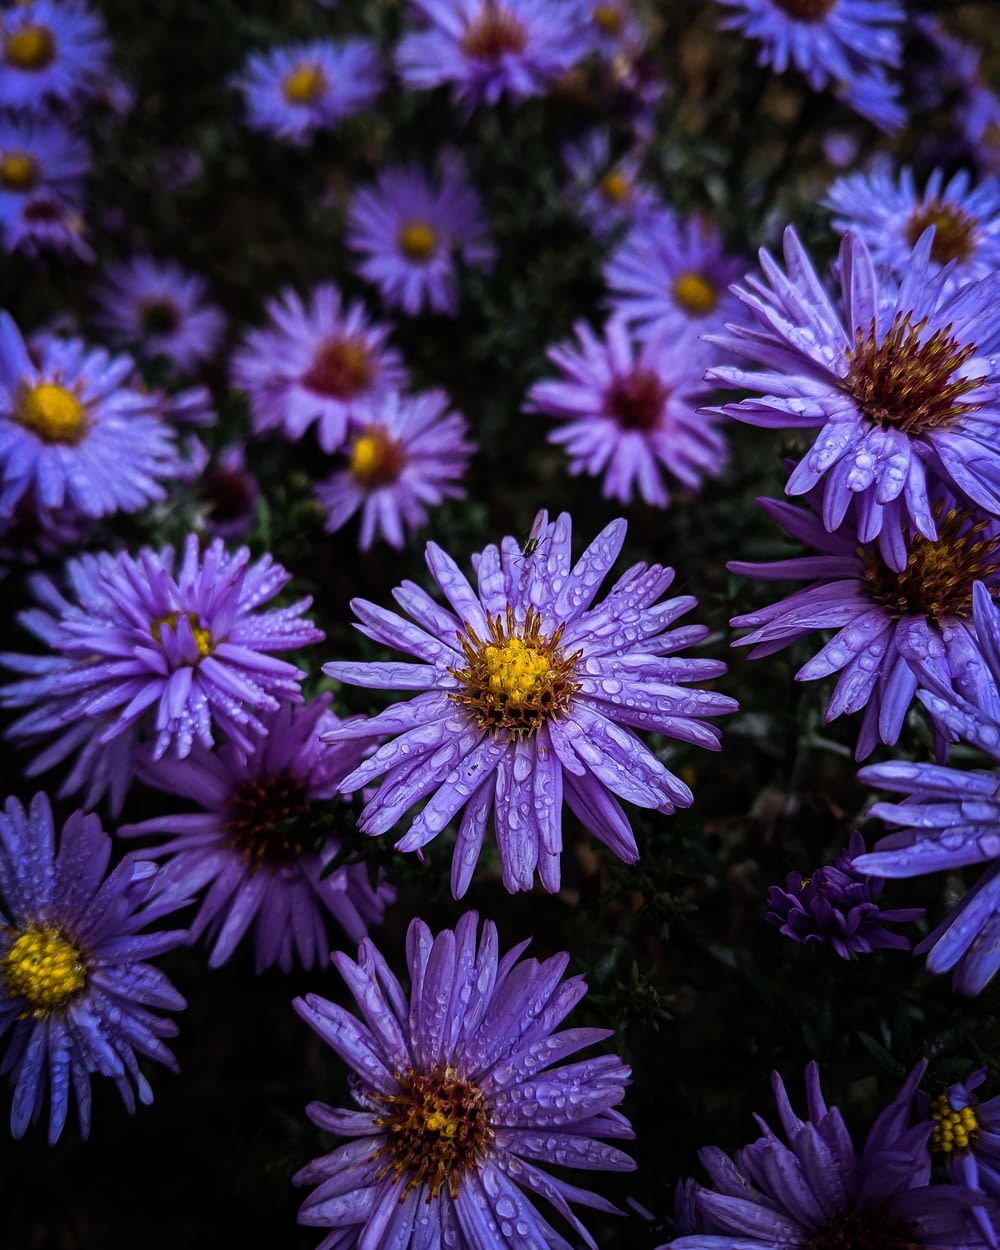 water dew on purple-petaled flowers